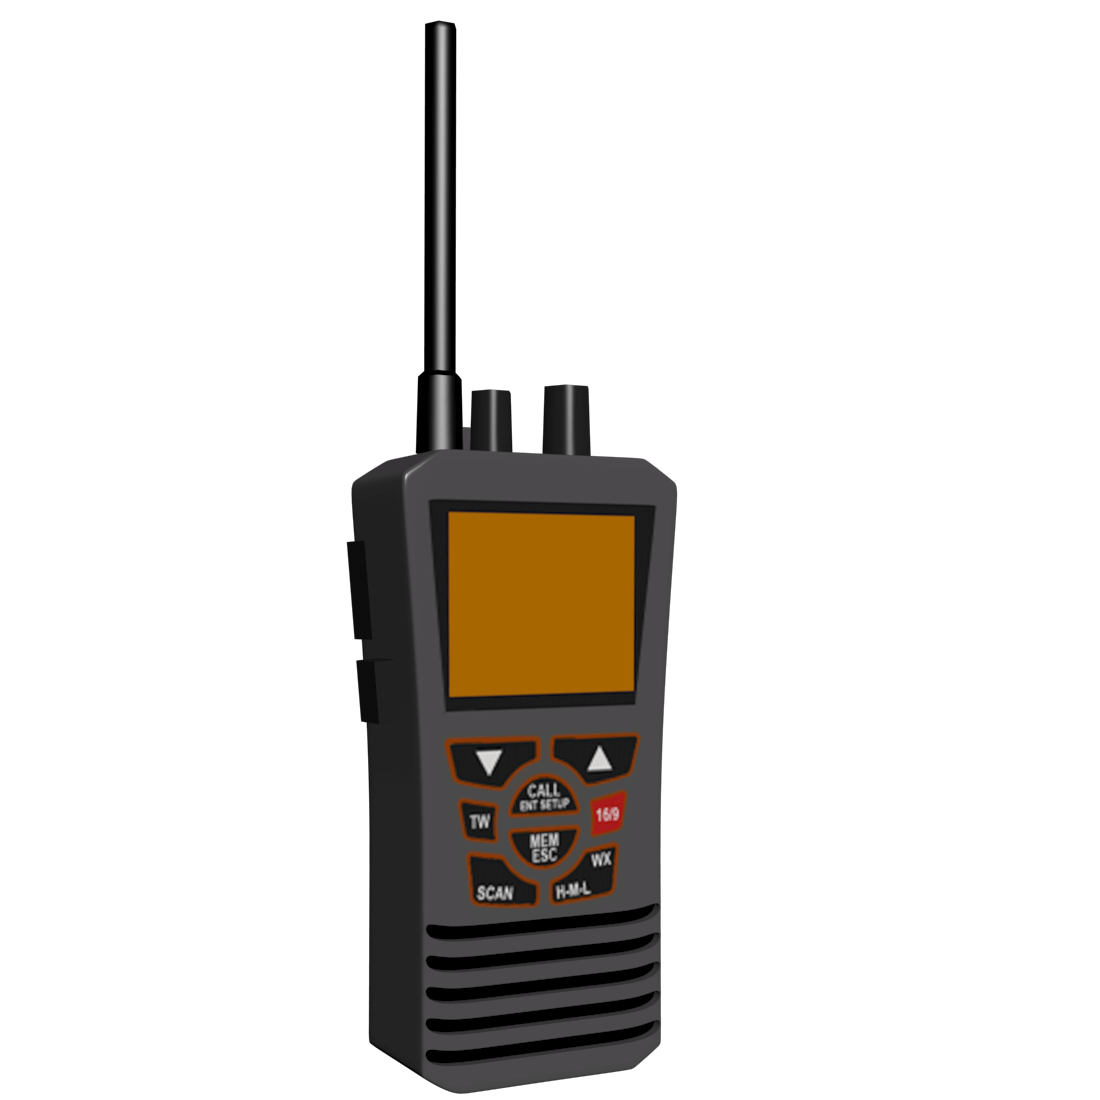 Radiotelephony